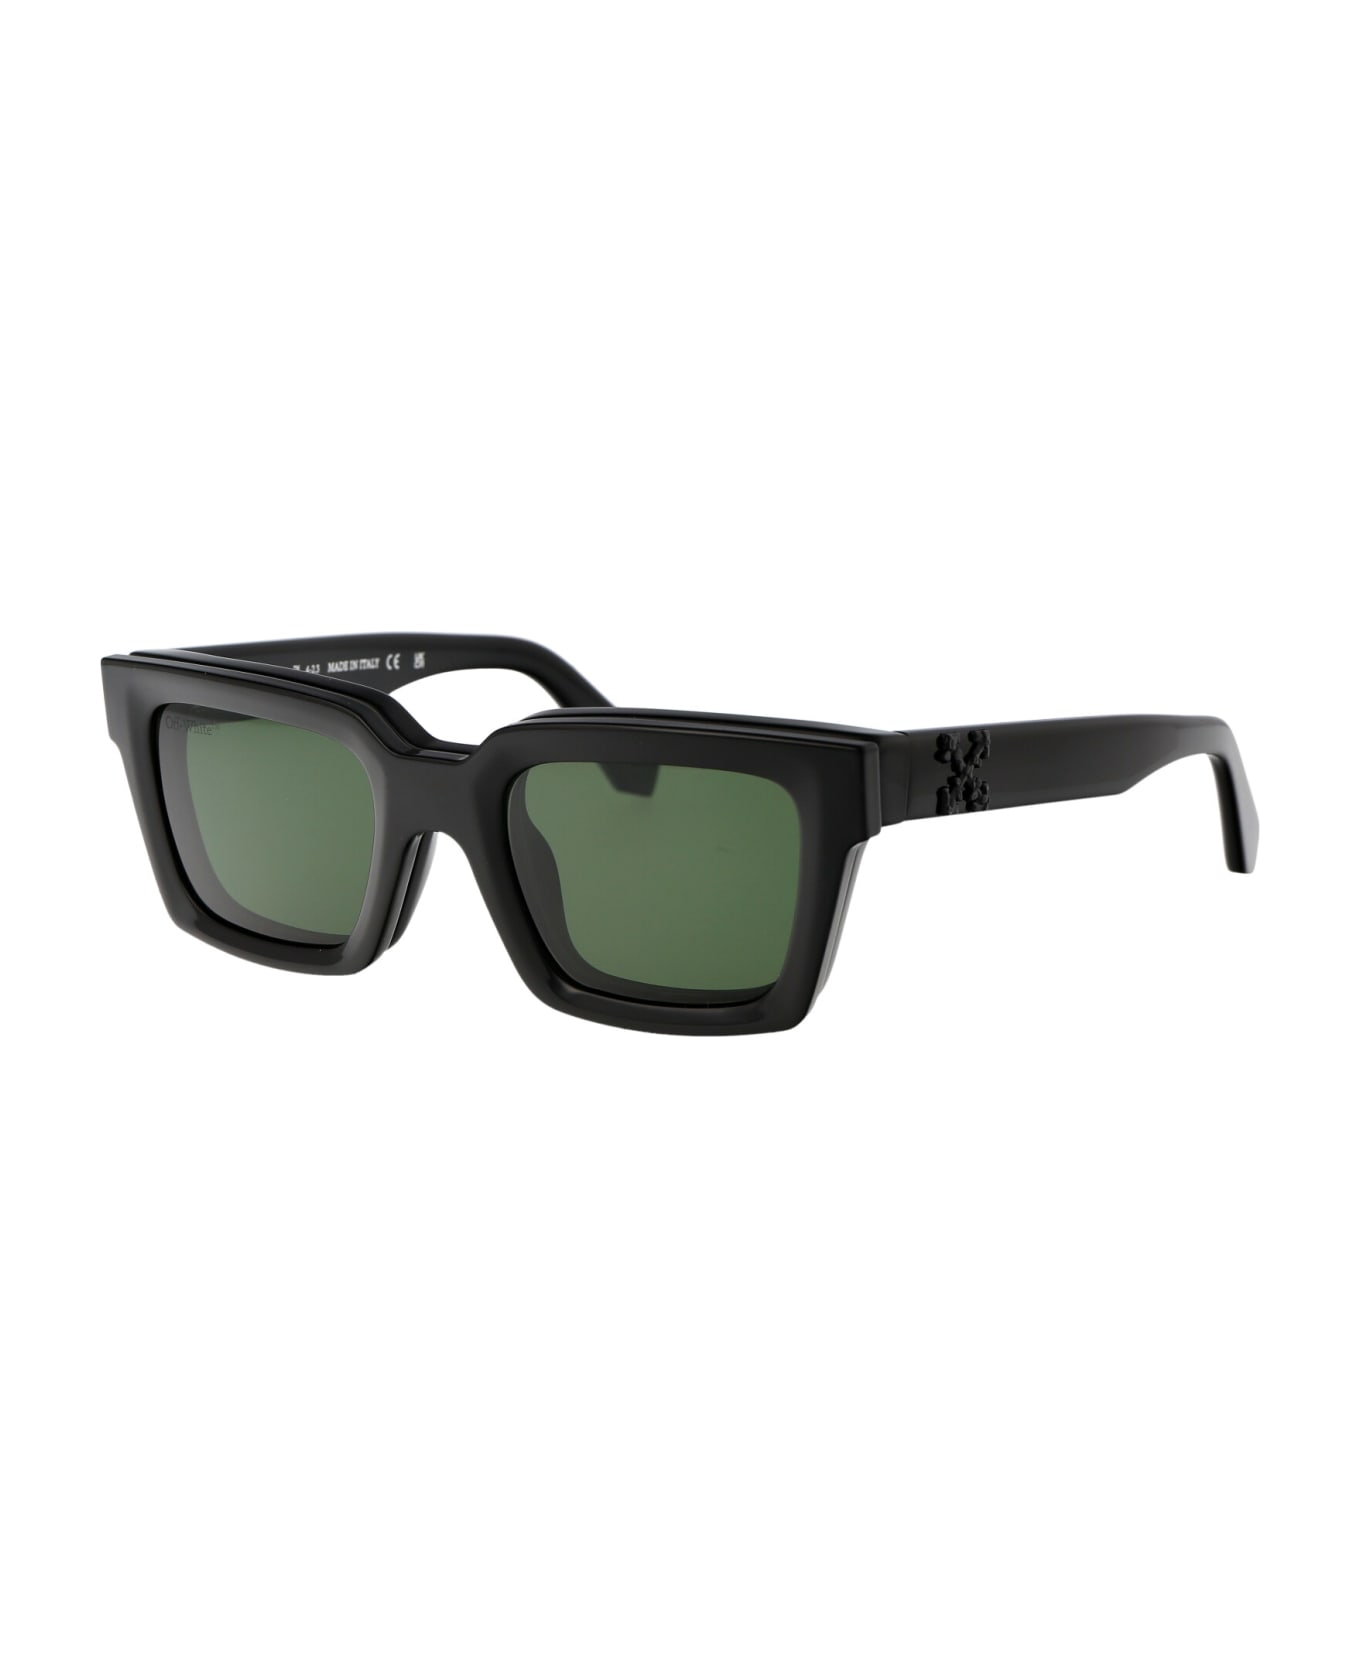 Off-White Clip On Sunglasses - 1055 BLACK